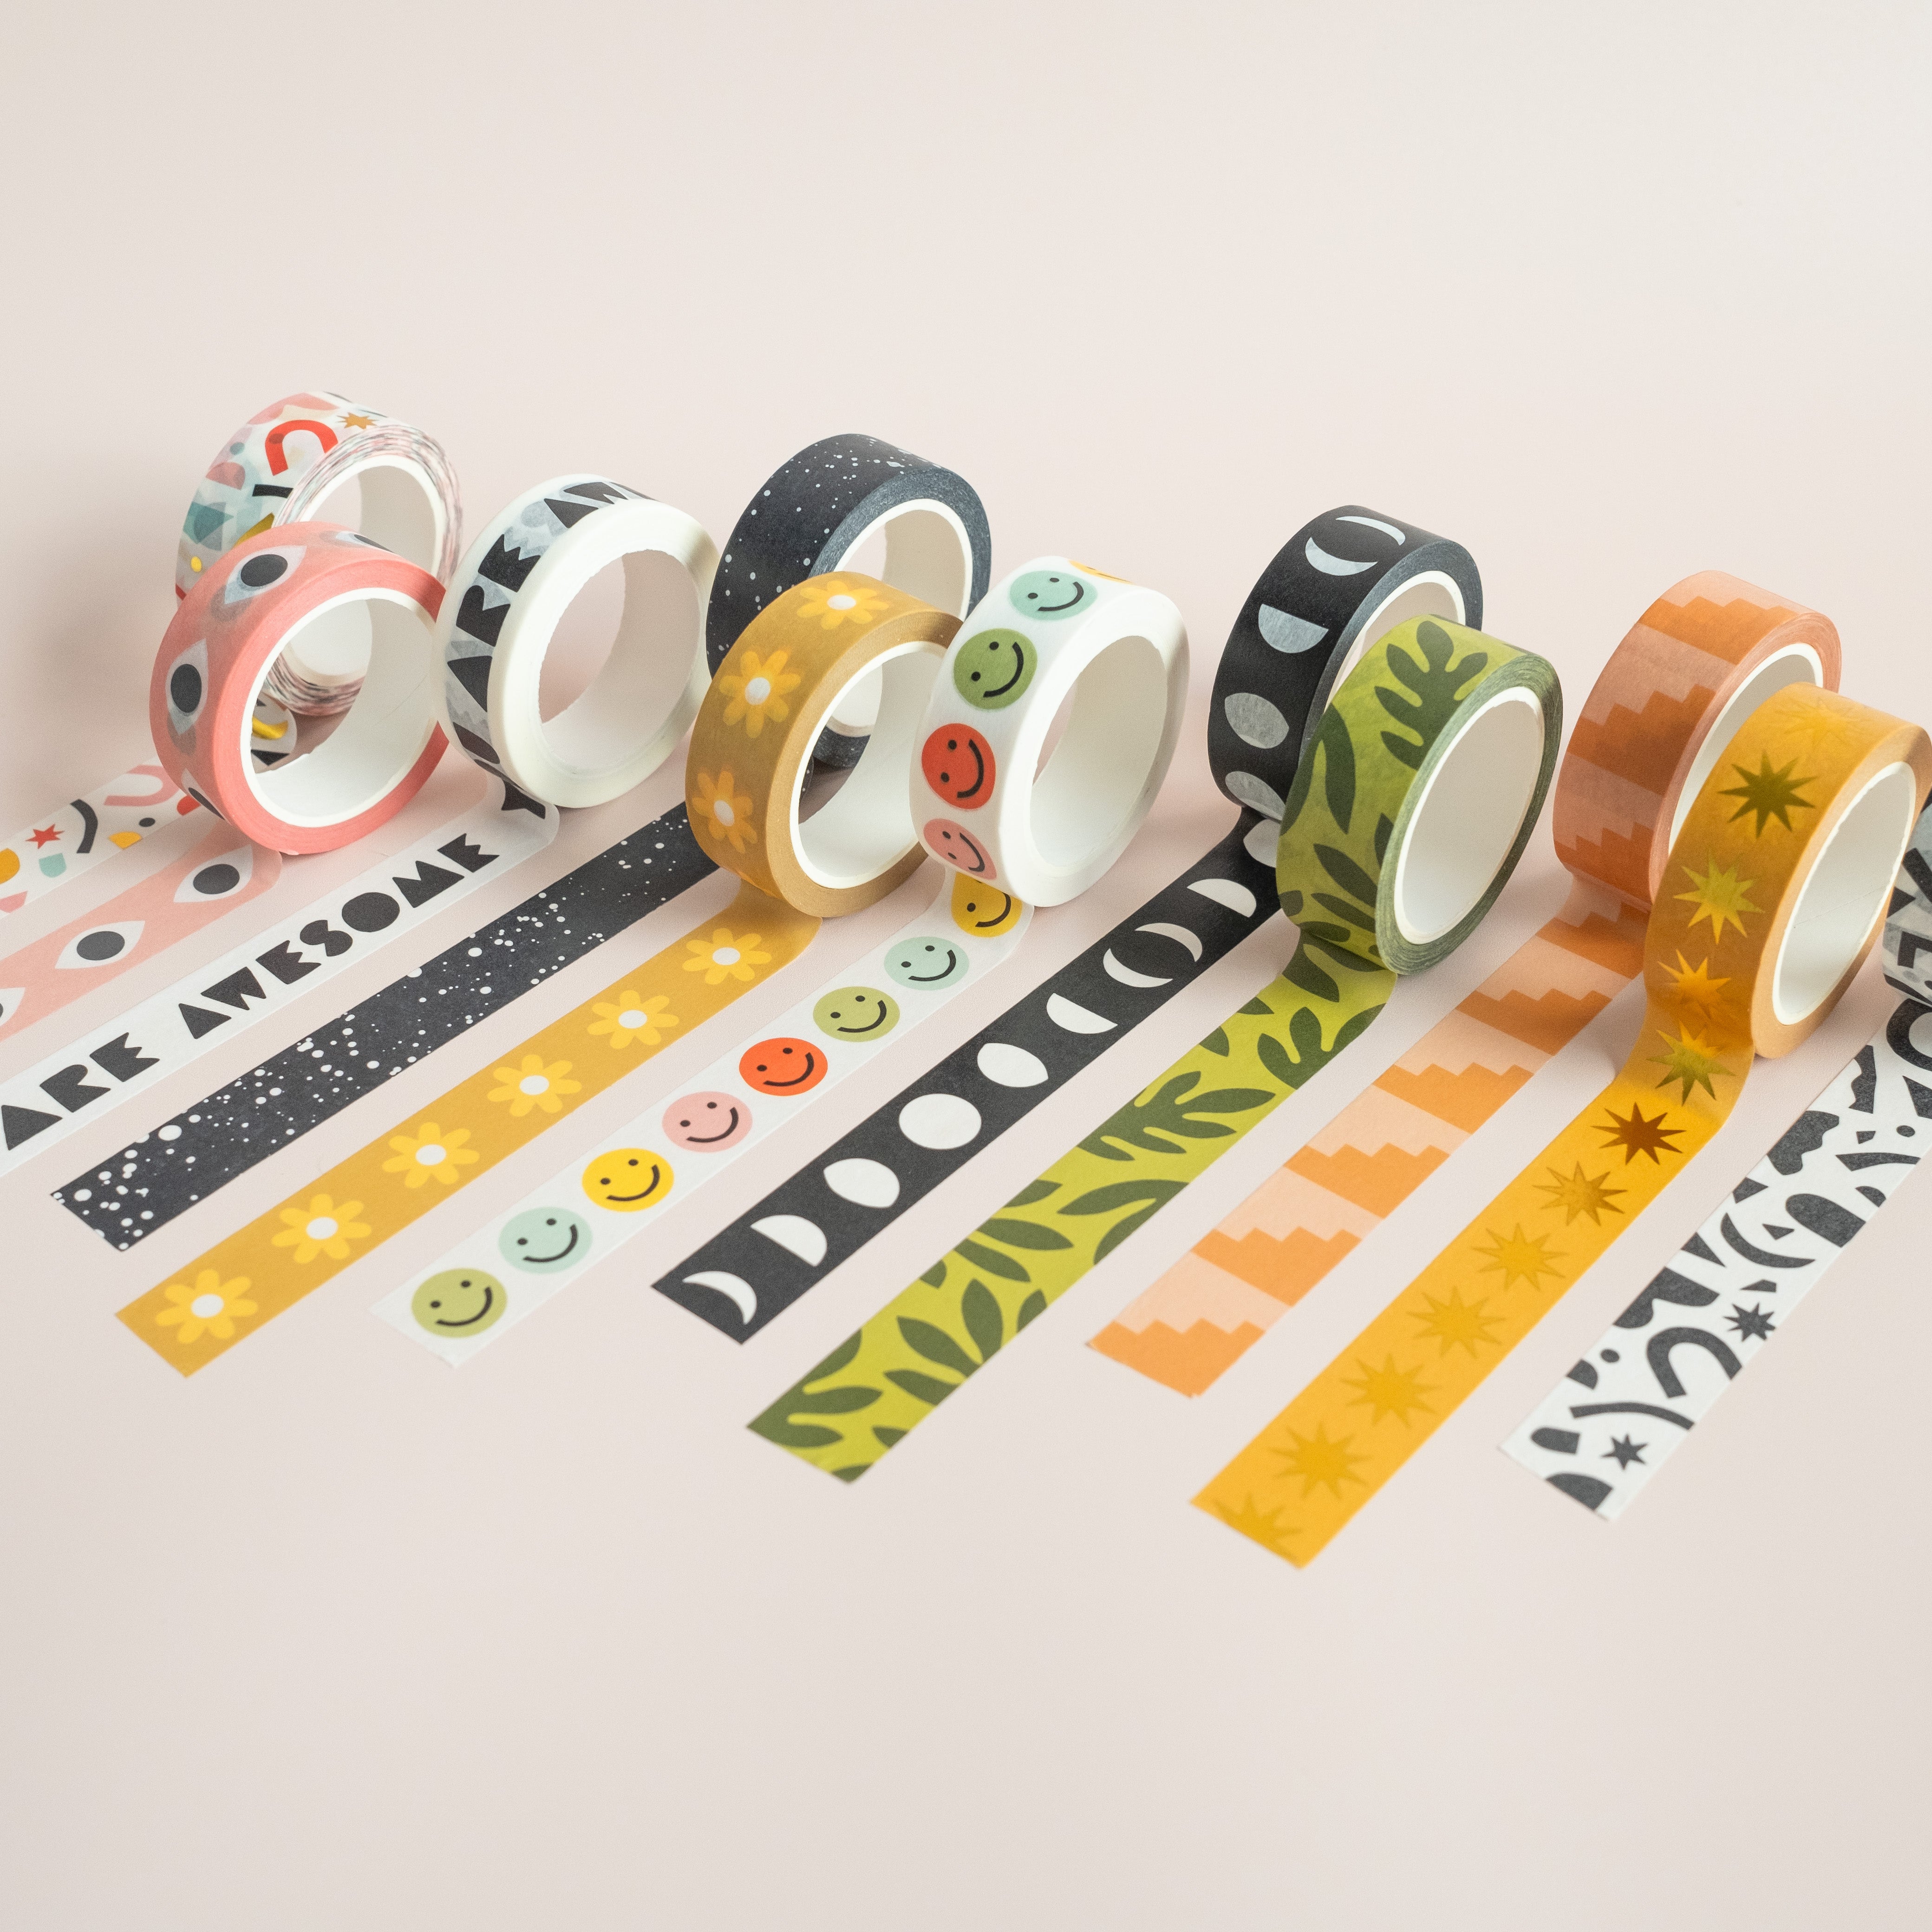 Gold Confetti Colourful Washi Tape Set Graphic by lilyuri0205